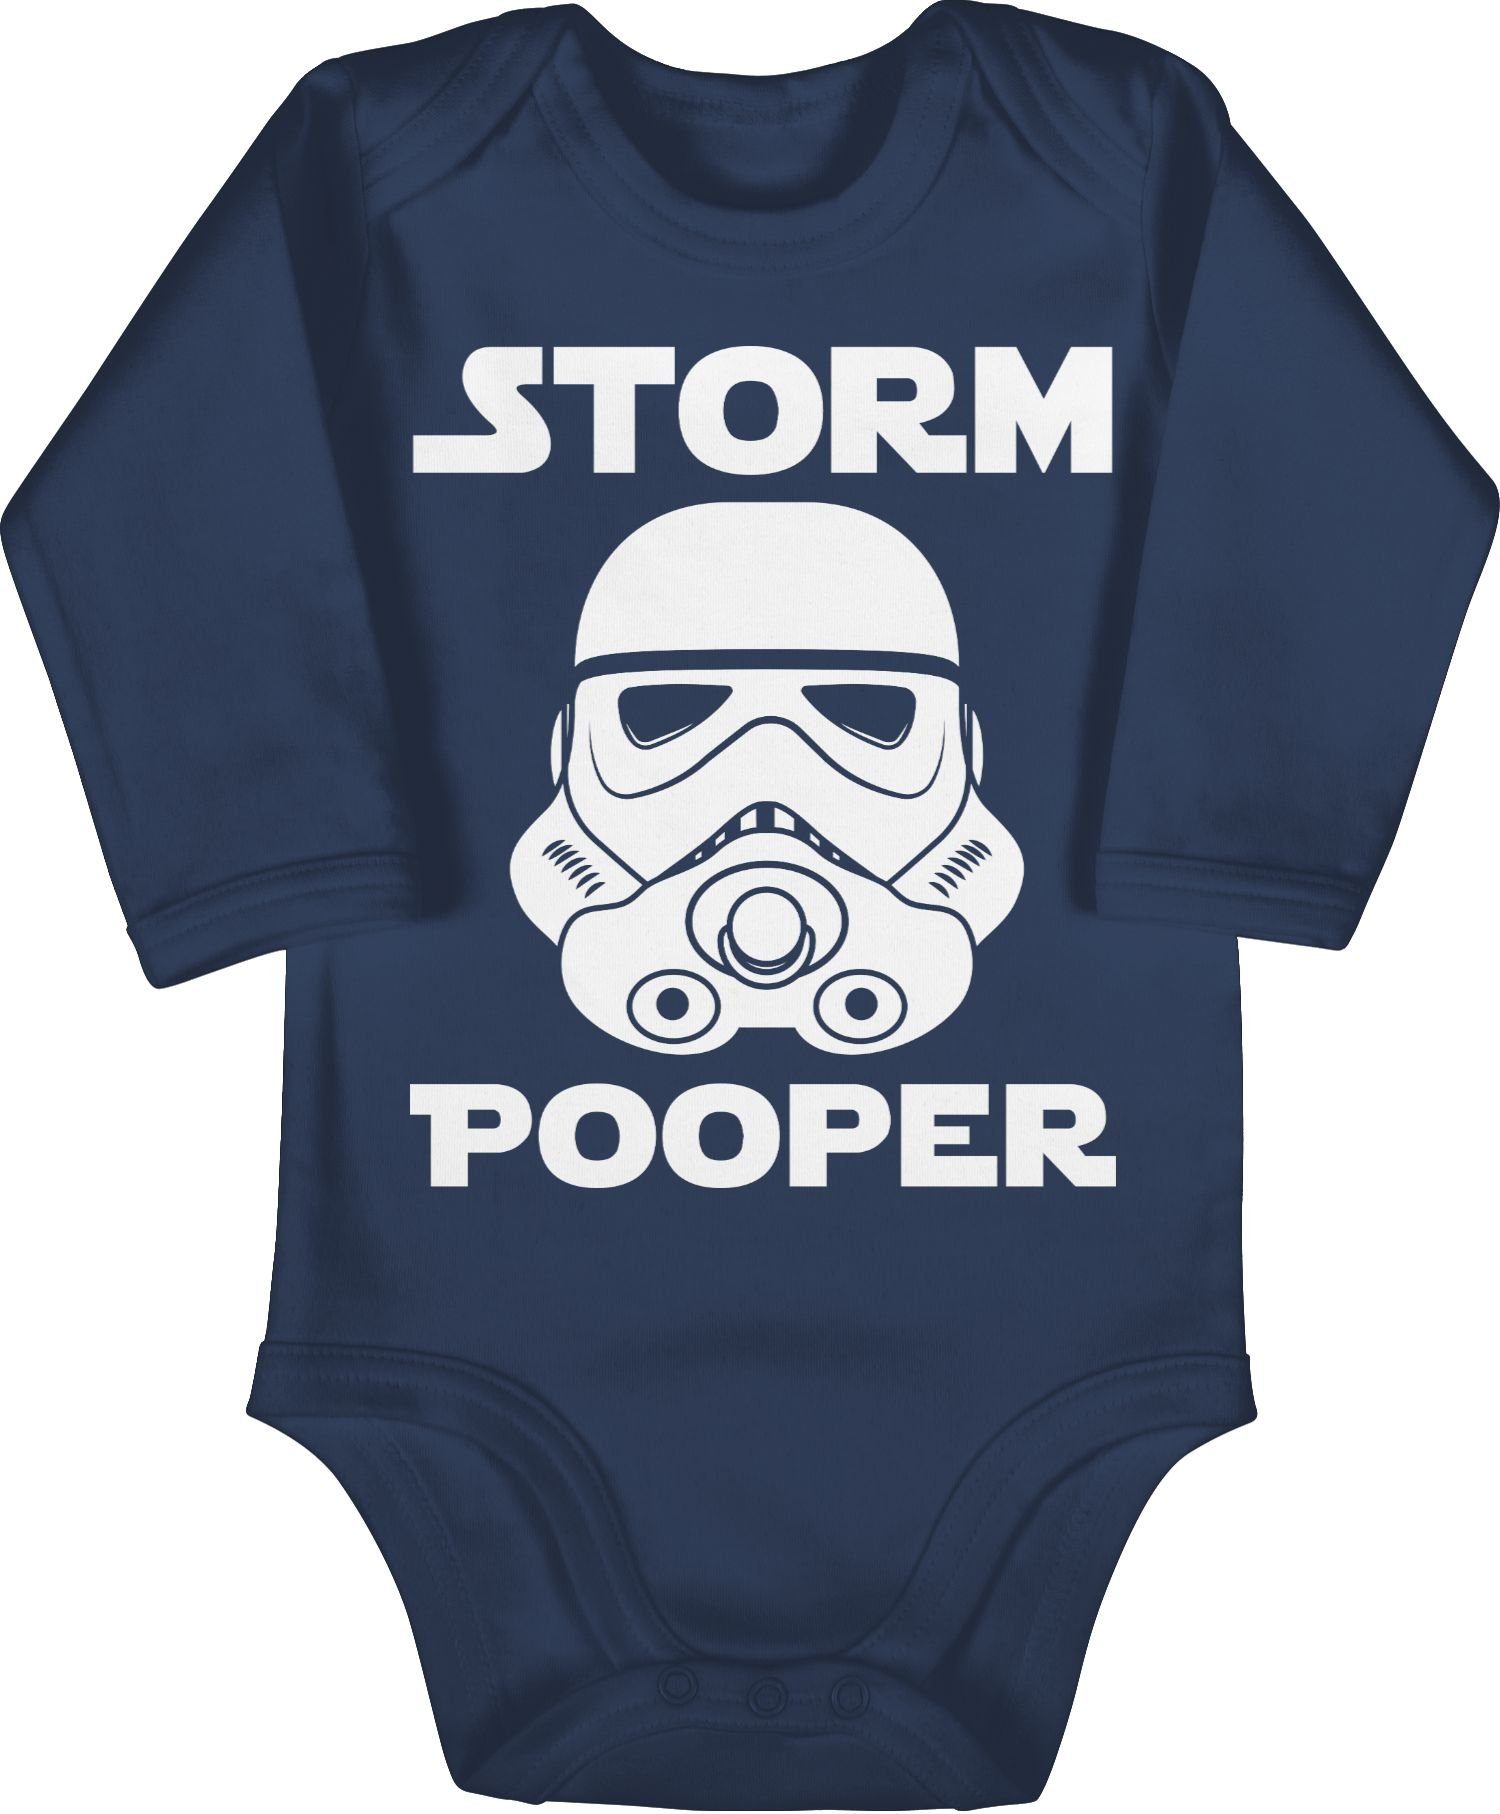 Stormpooper Baby - Lustige Babygeschenke Navy 2 Pooper Blau Storm Sprüche Shirtracer Shirtbody